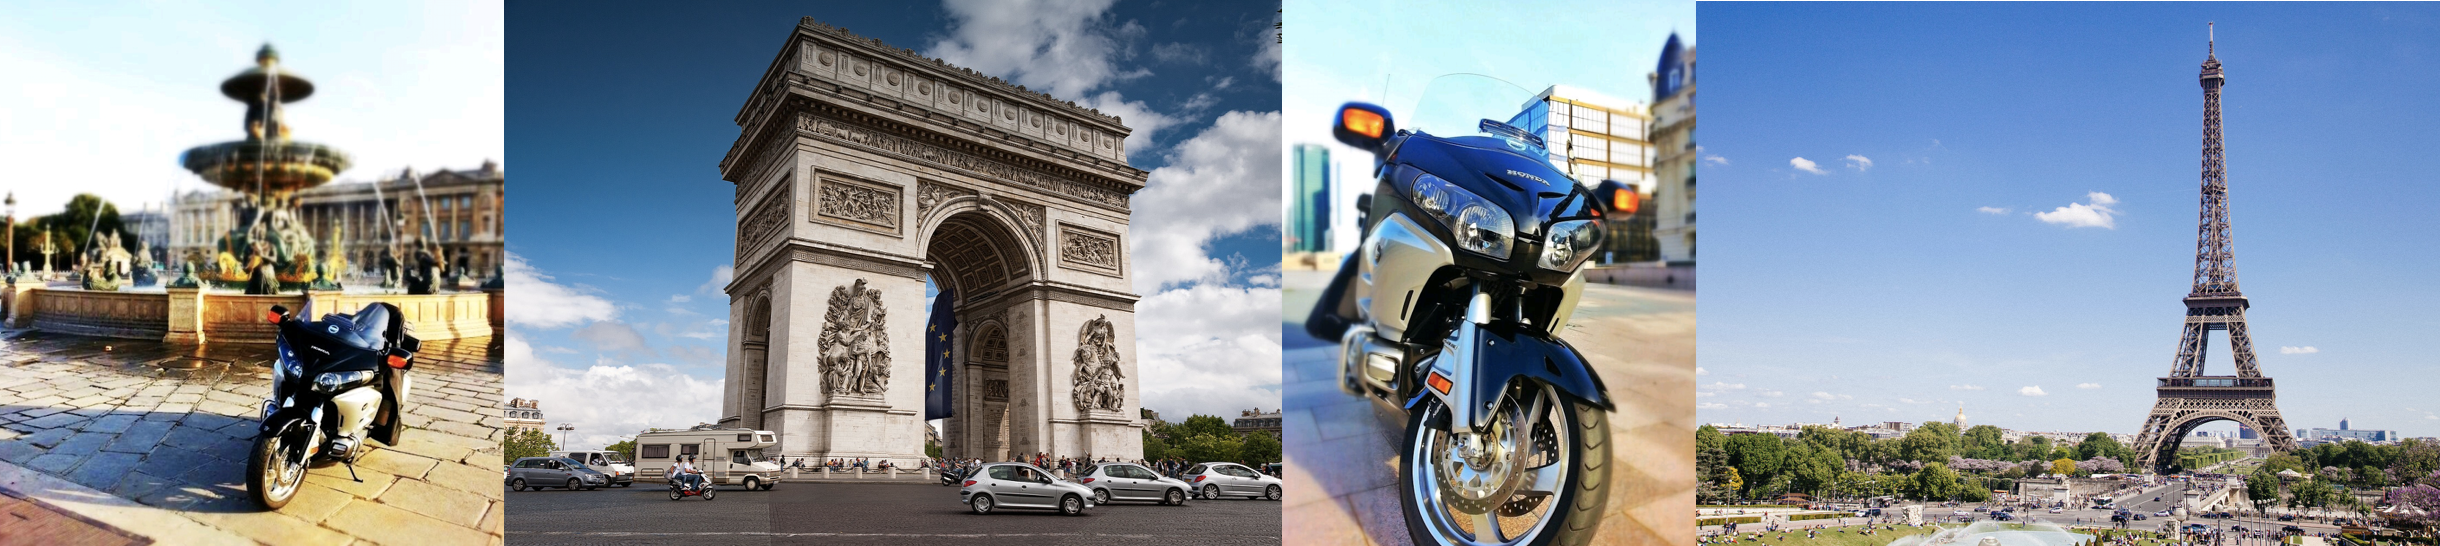 taxi moto luxe paris